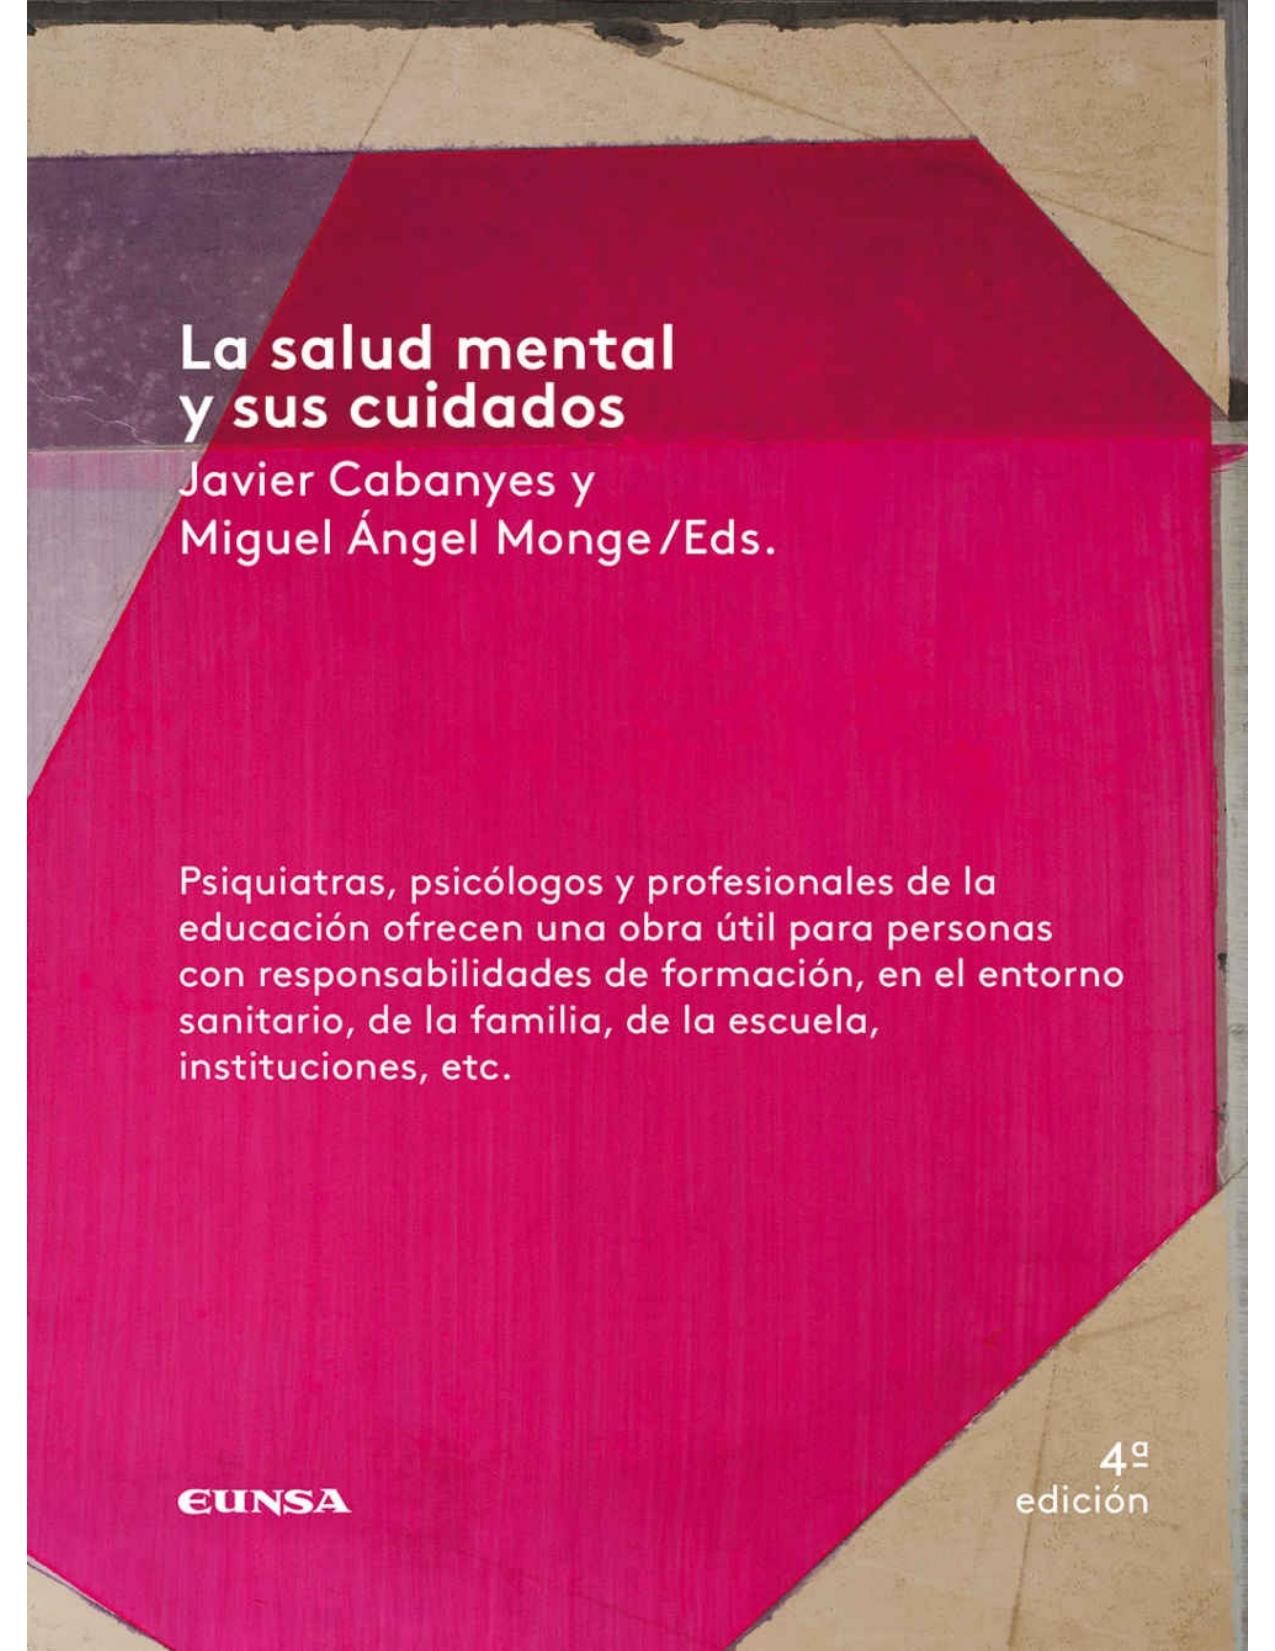 La salud mental y sus cuidados (Spanish Edition)